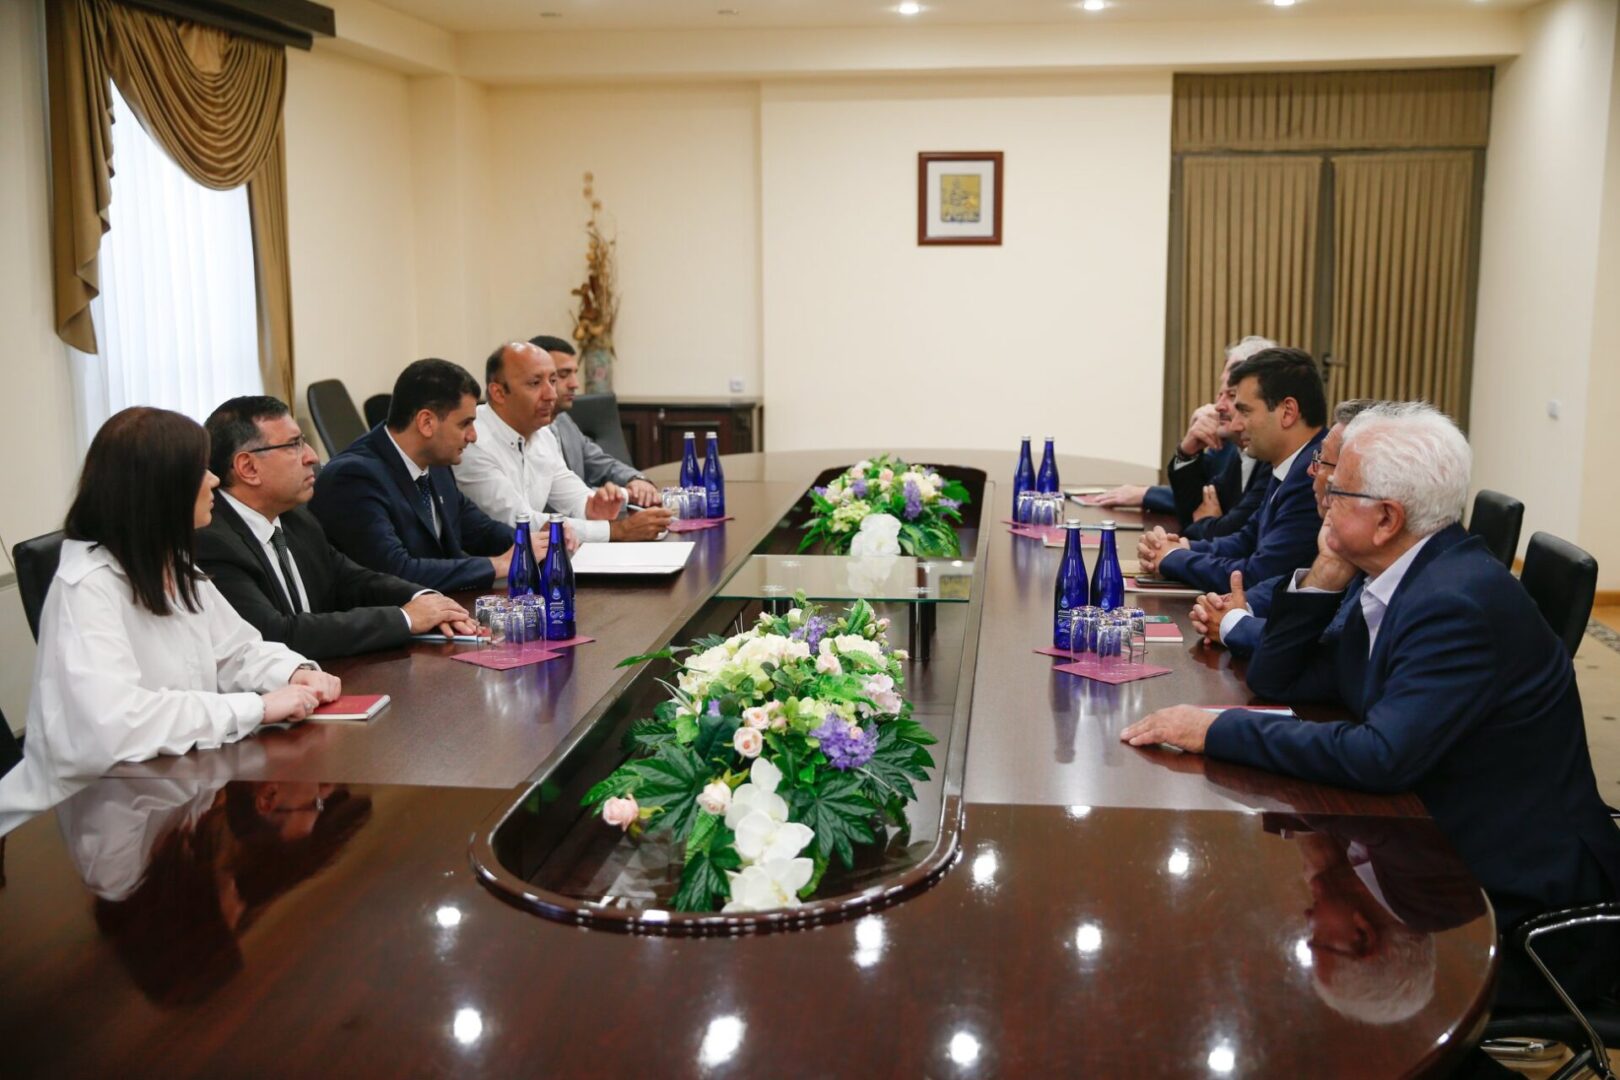 Երևանը կարևորում է ֆրանսիական քաղաքների հետ գործակցության ընդլայնումը. Հրաչյա Սարգսյանն ընդունել է Նիցցայի փոխքաղաքապետին